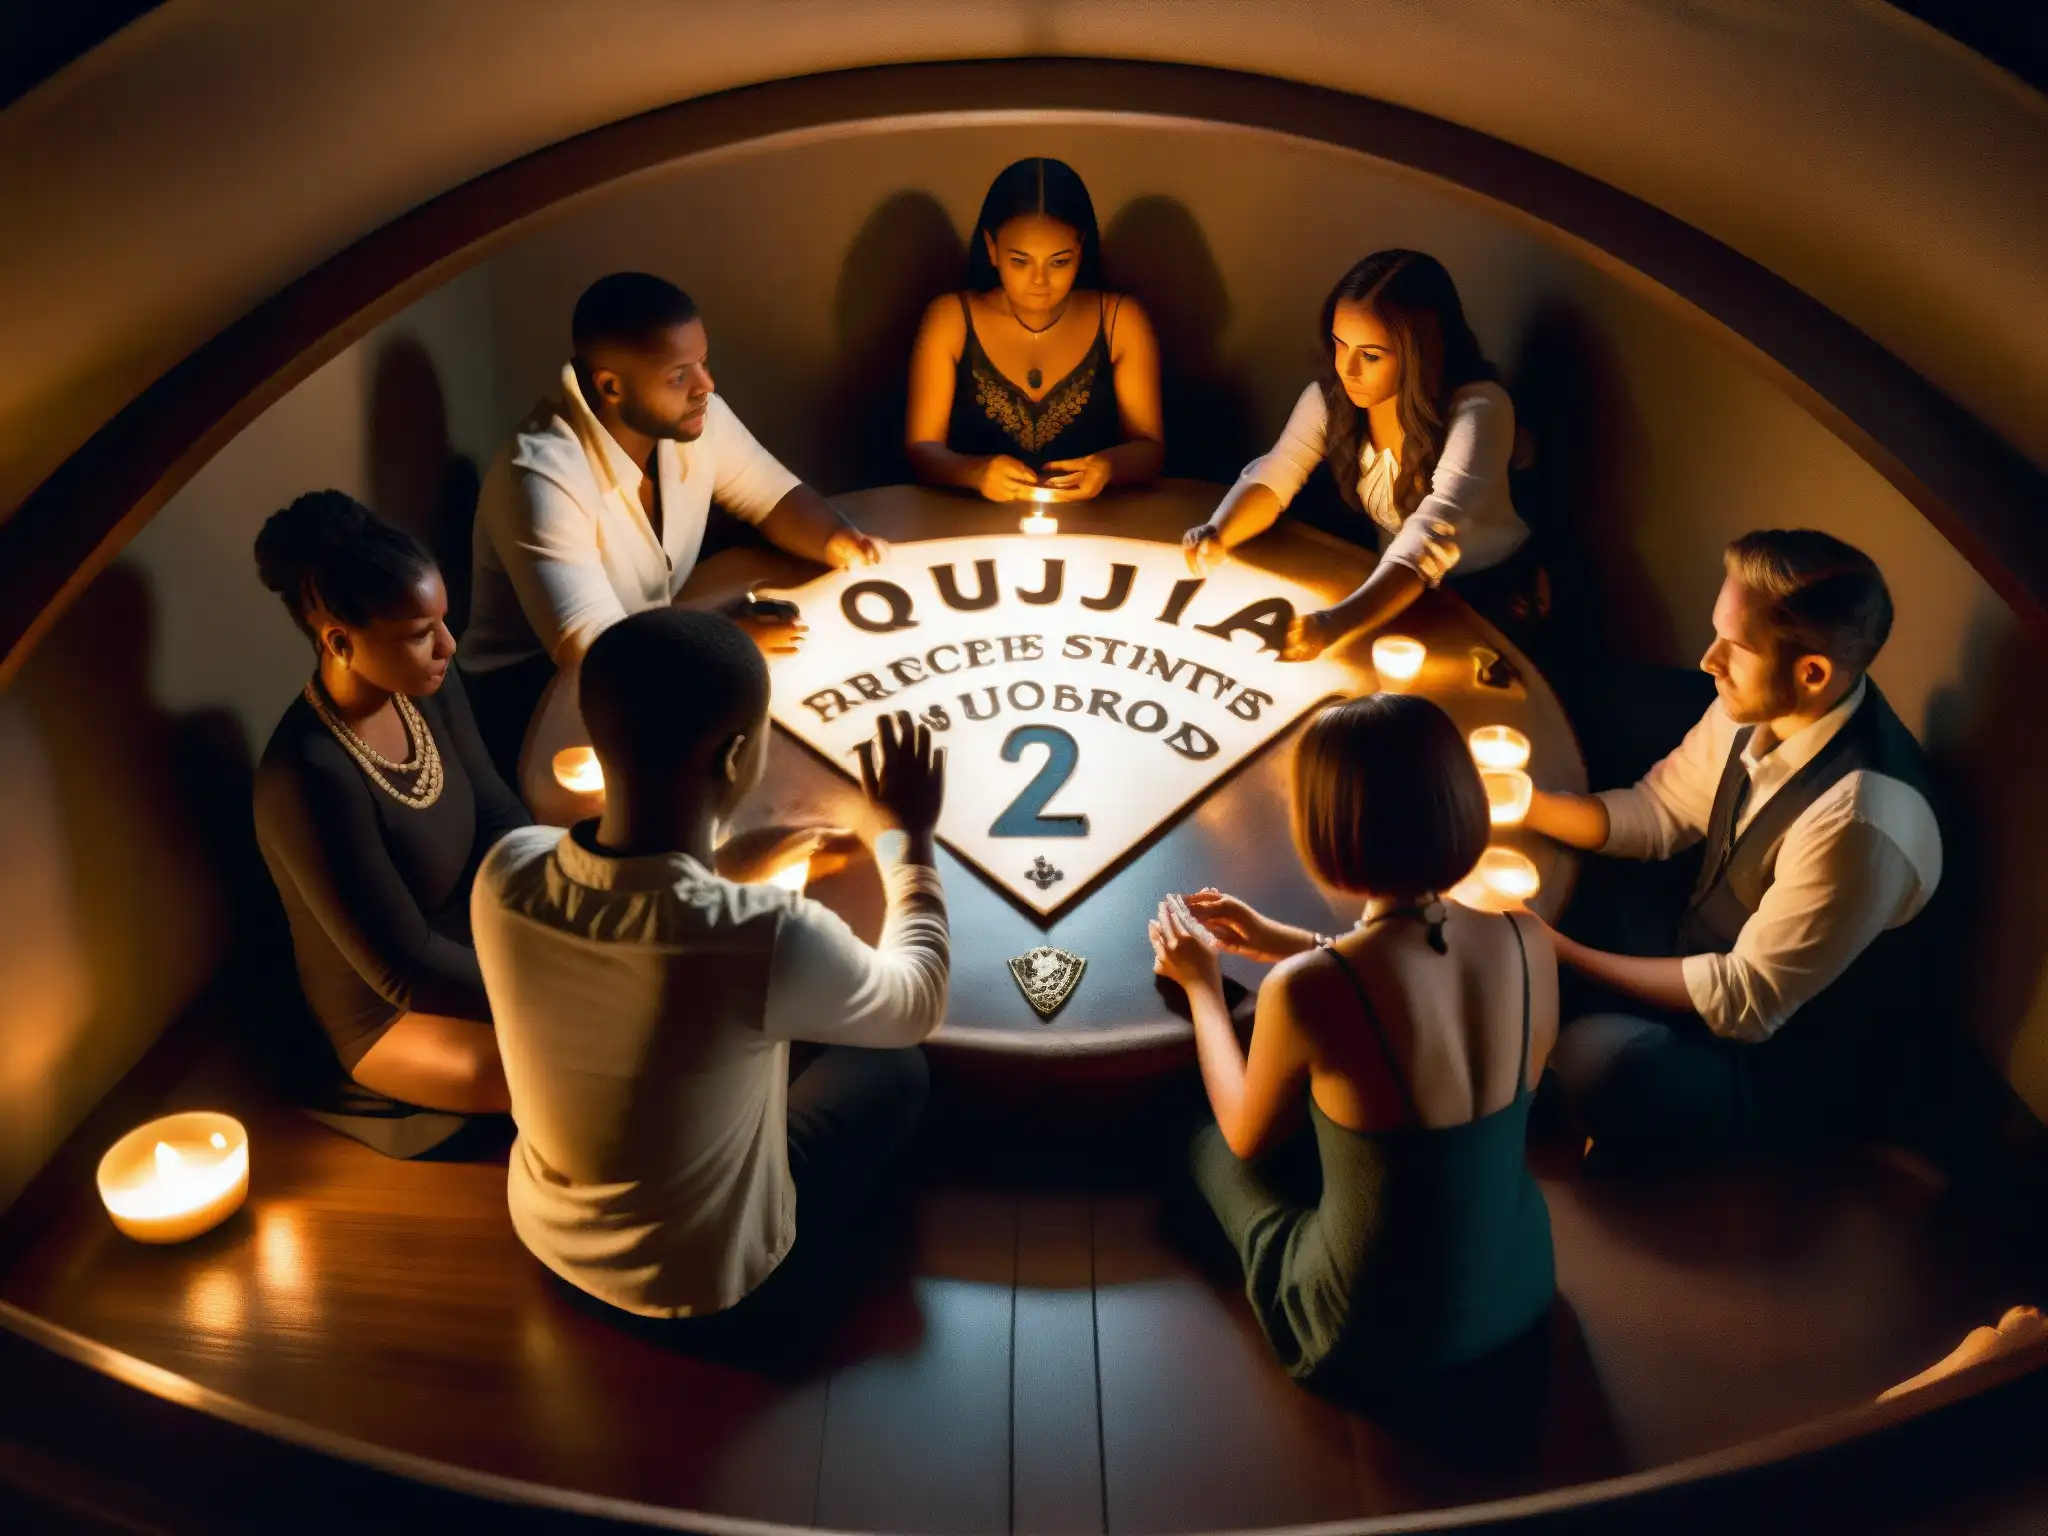 Un grupo tenso de personas se sienta alrededor de una tabla Ouija en una habitación tenue, exudando misterio